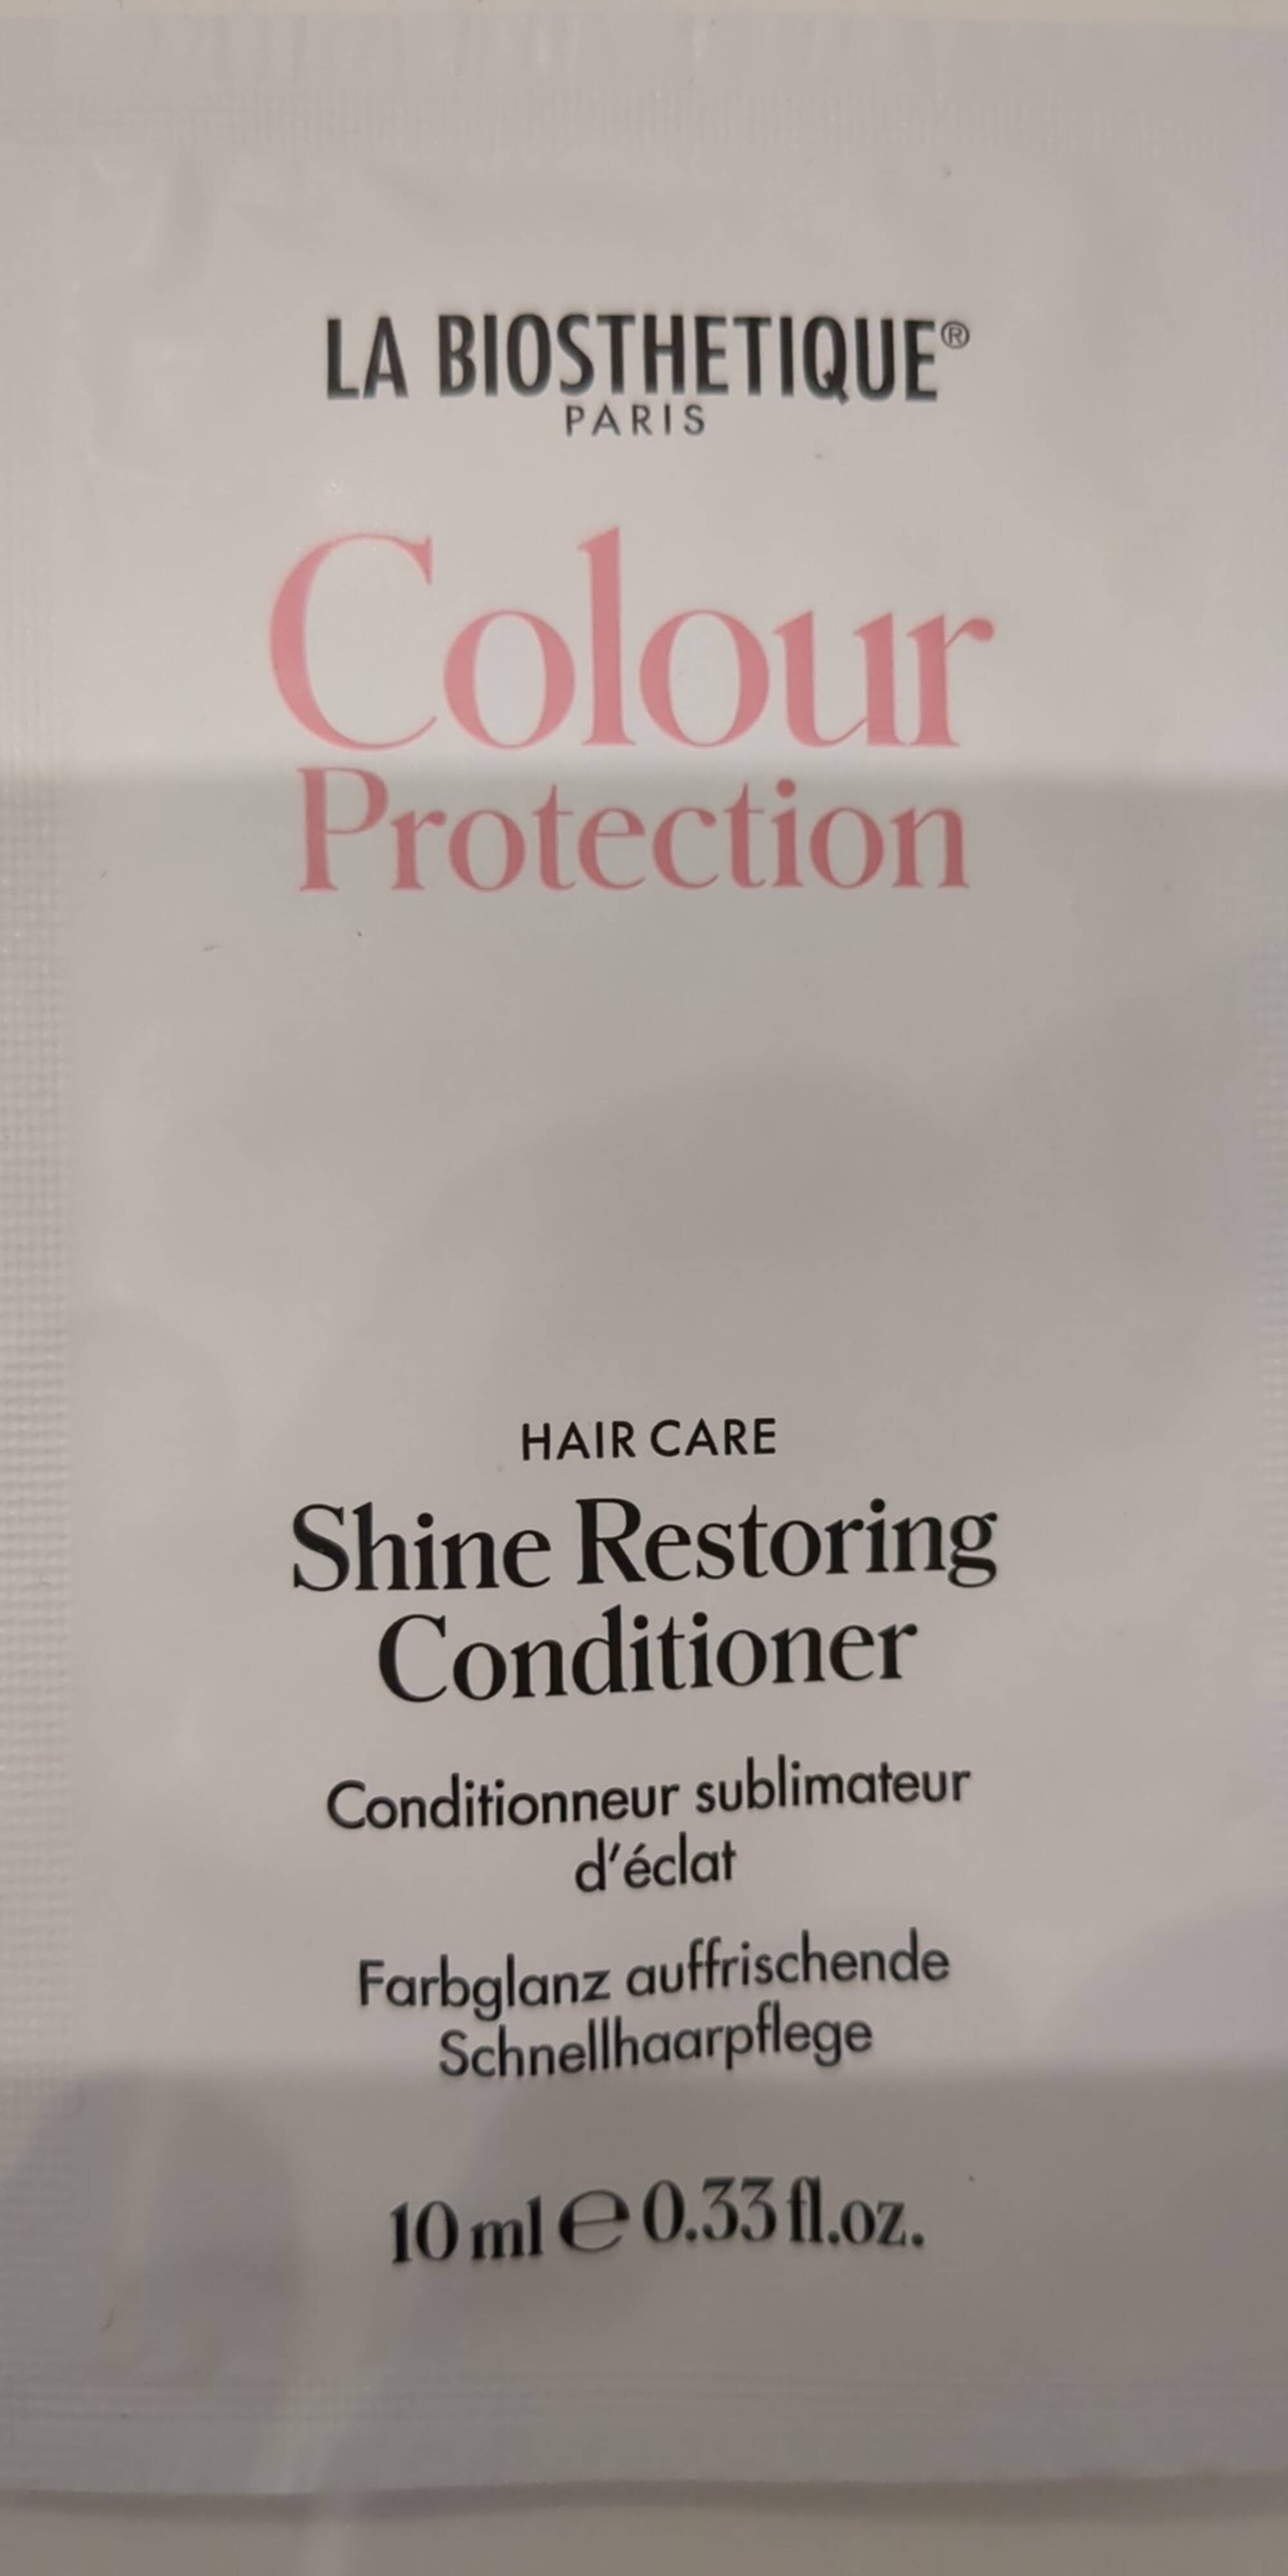 LA BIOSTHETIQUE PARIS - Colour protection - Shine restoring conditioner